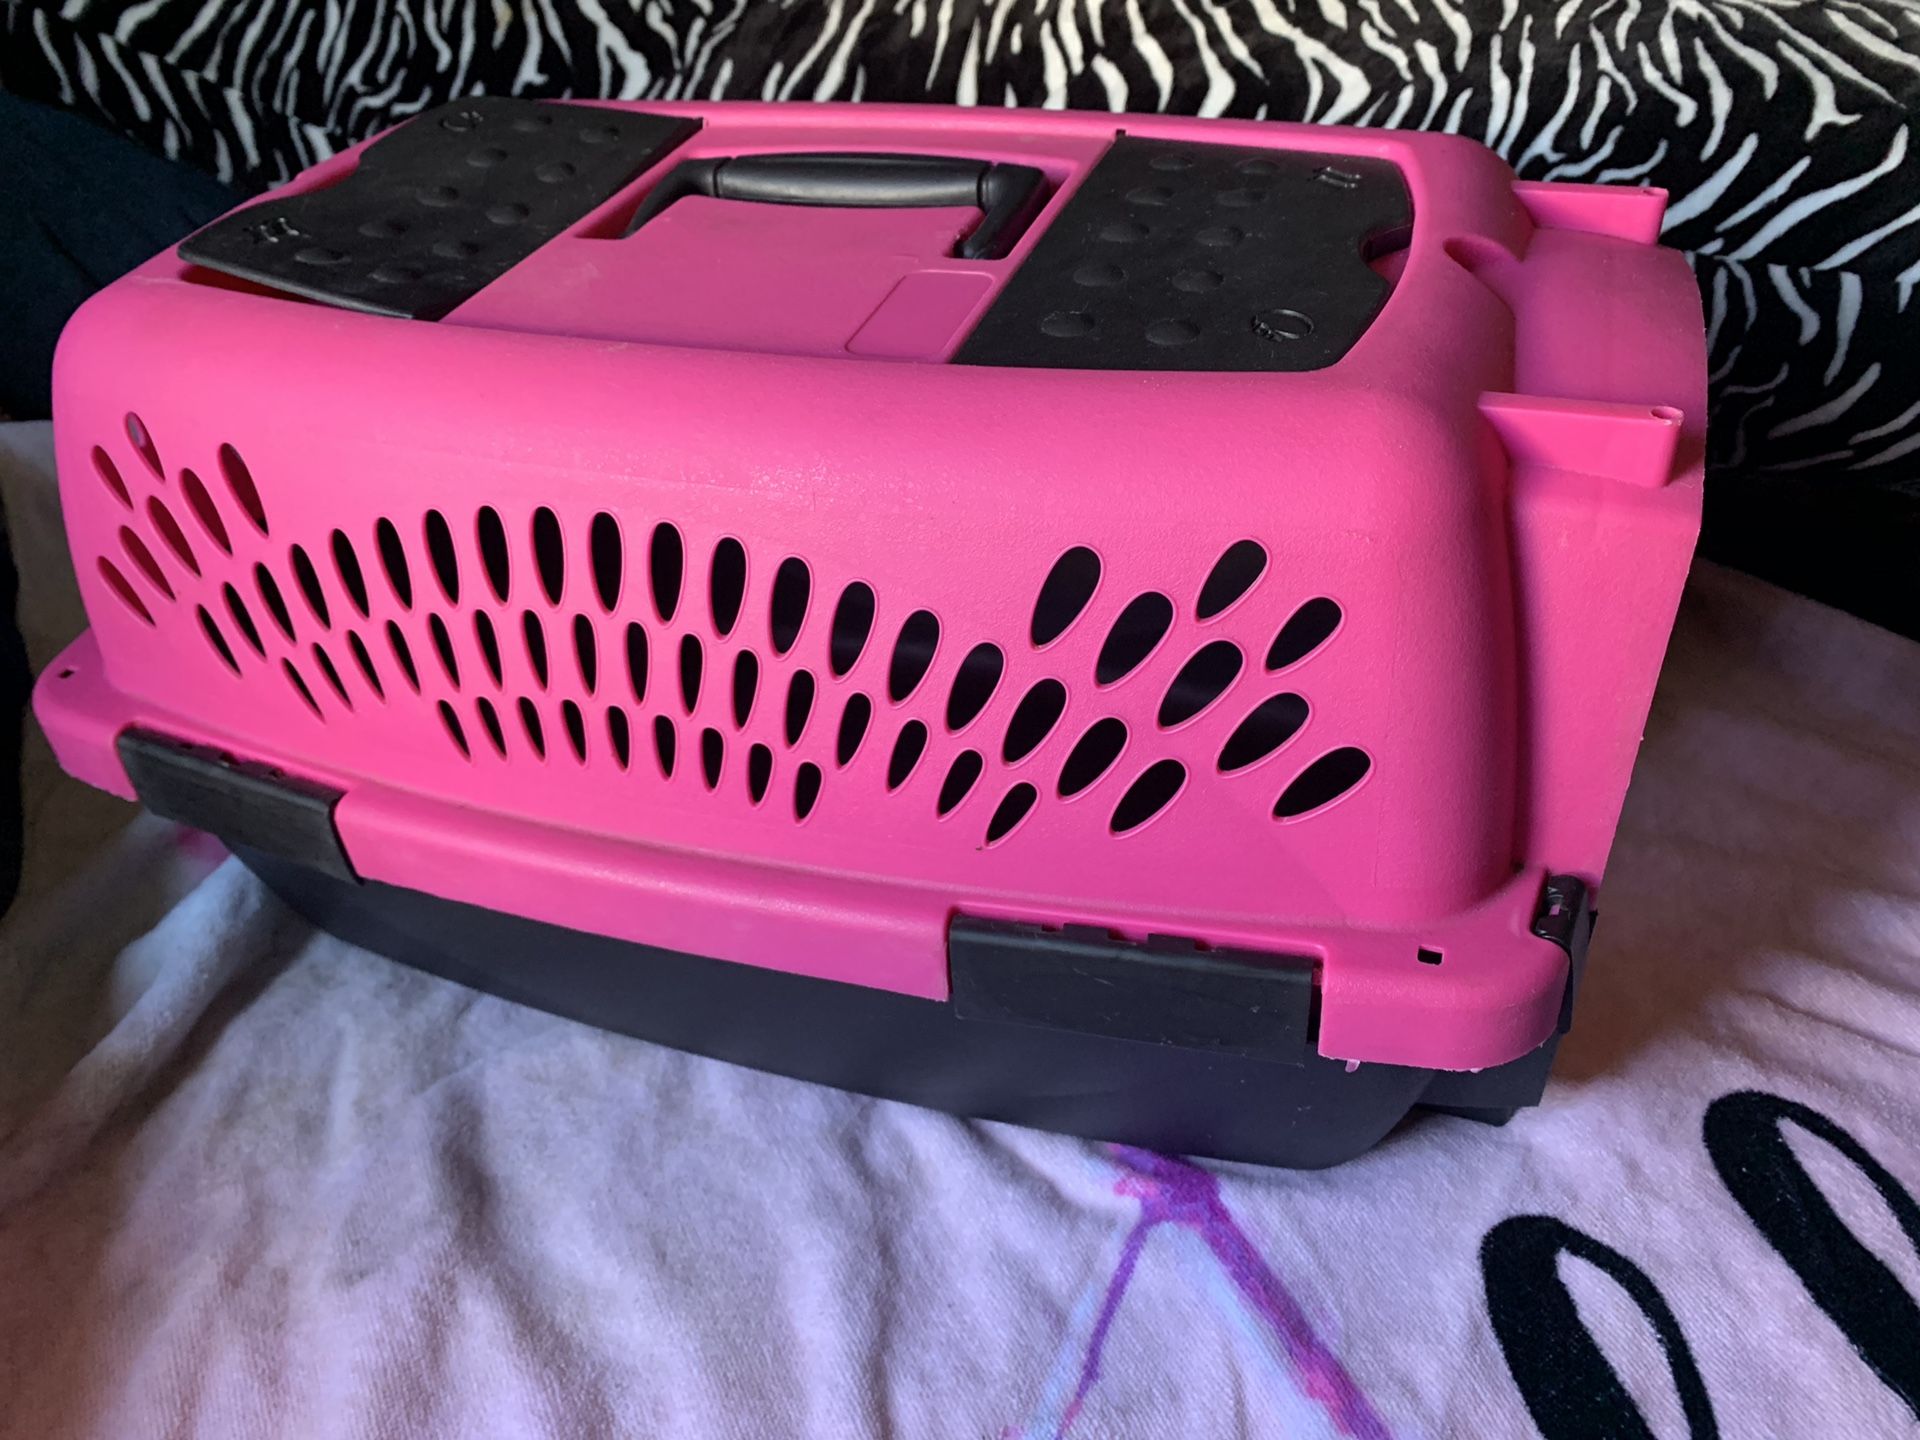 Pink Pet Carrier